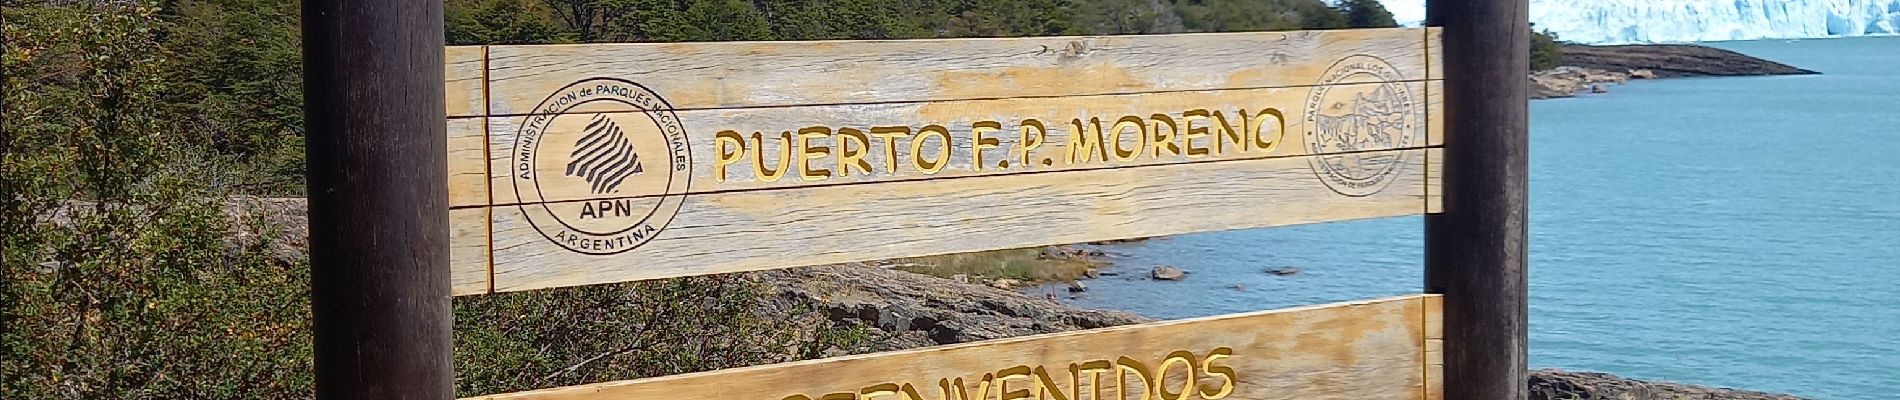 Randonnée Marche Unknown - Perito Moreno - Photo